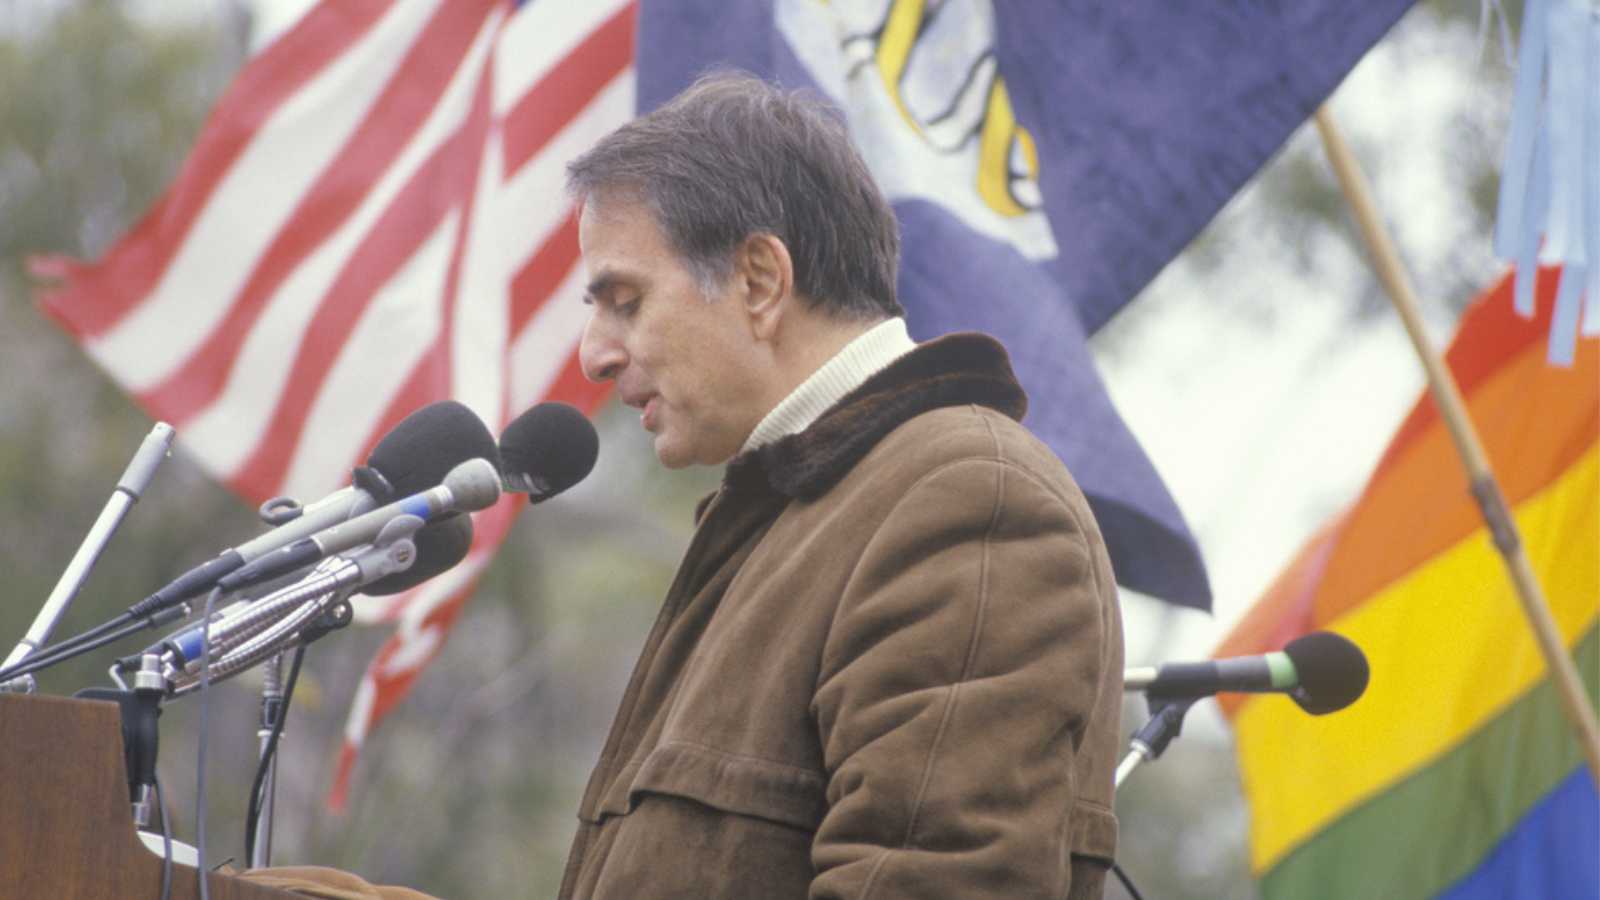 Nhà hoạt động chính trị Carl Sagan phát biểu tại cuộc biểu tình ở Washington, D.C.